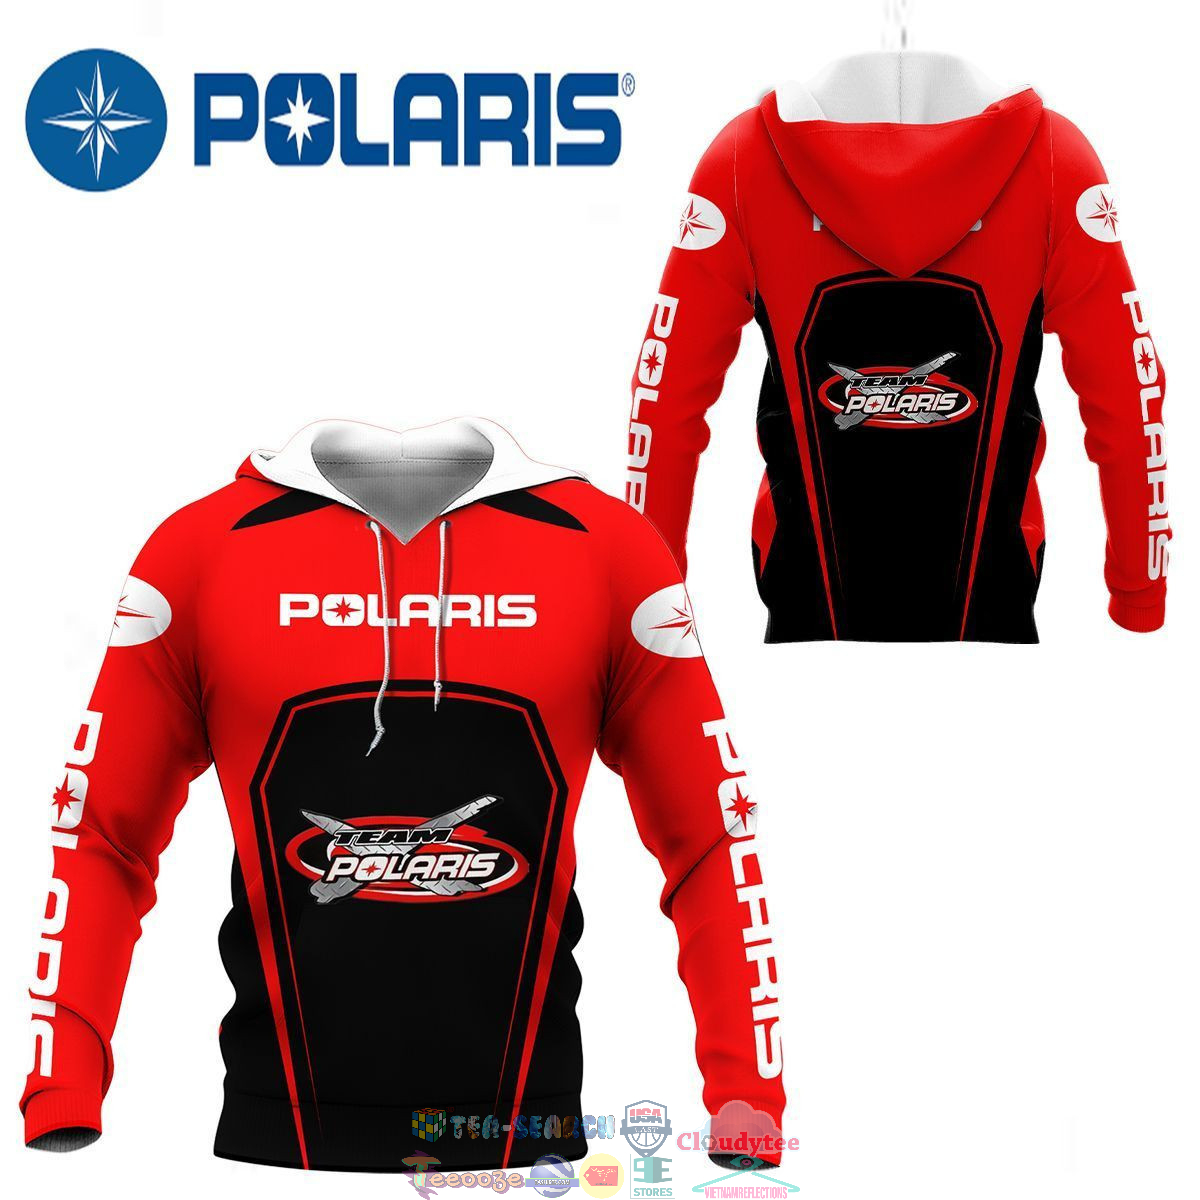 Polaris Racing Team ver 11 3D hoodie and t-shirt